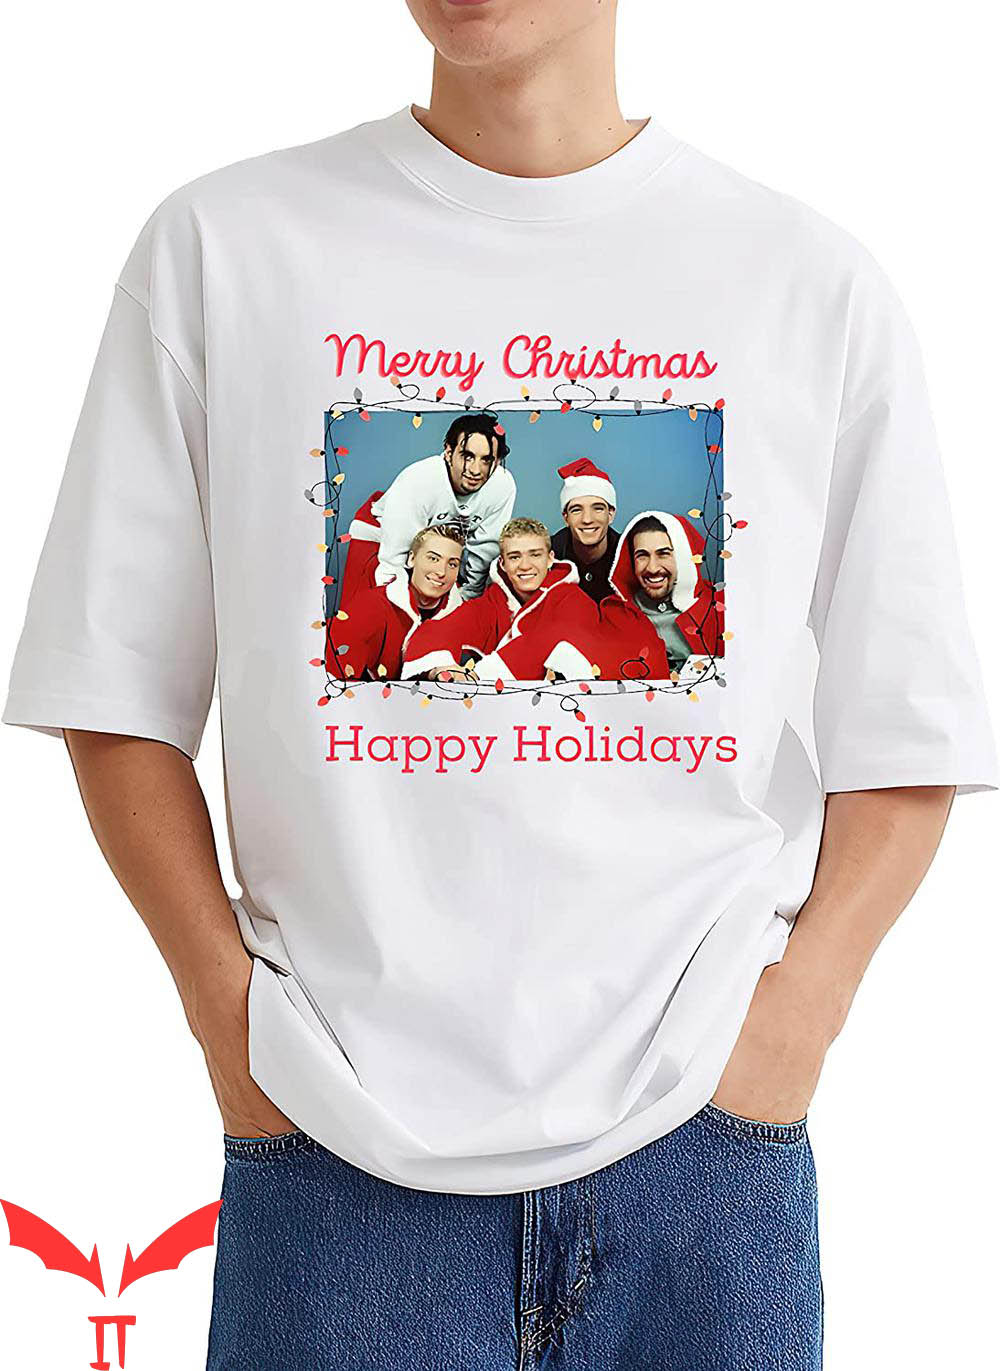 Nsync Christmas T-Shirt